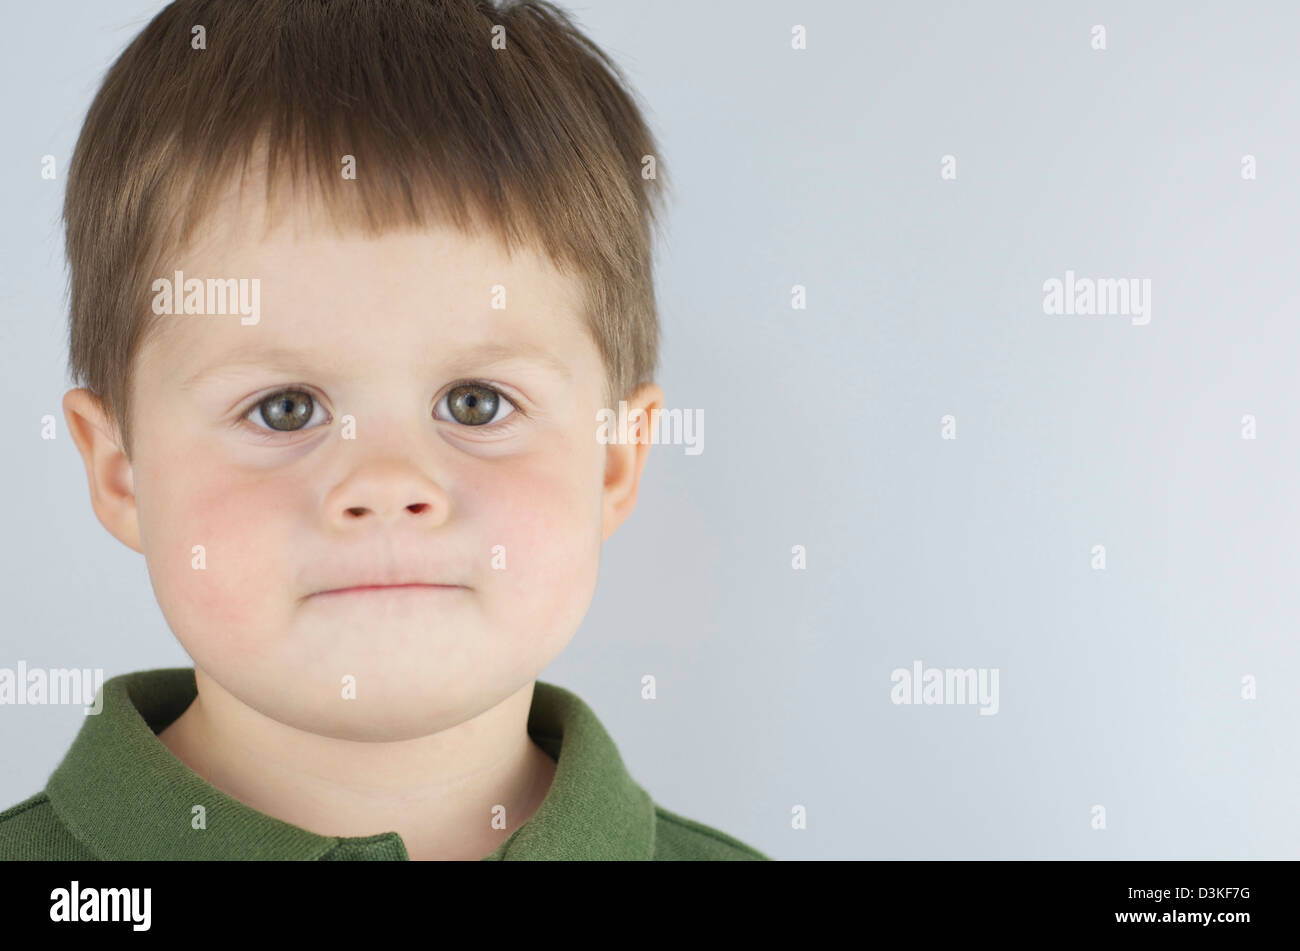 Grave e determinato 2 anno vecchio ragazzo guardando dritto in telecamera, labbra pursed con occhi verdi ampia e chiara, copia dello spazio. Foto Stock